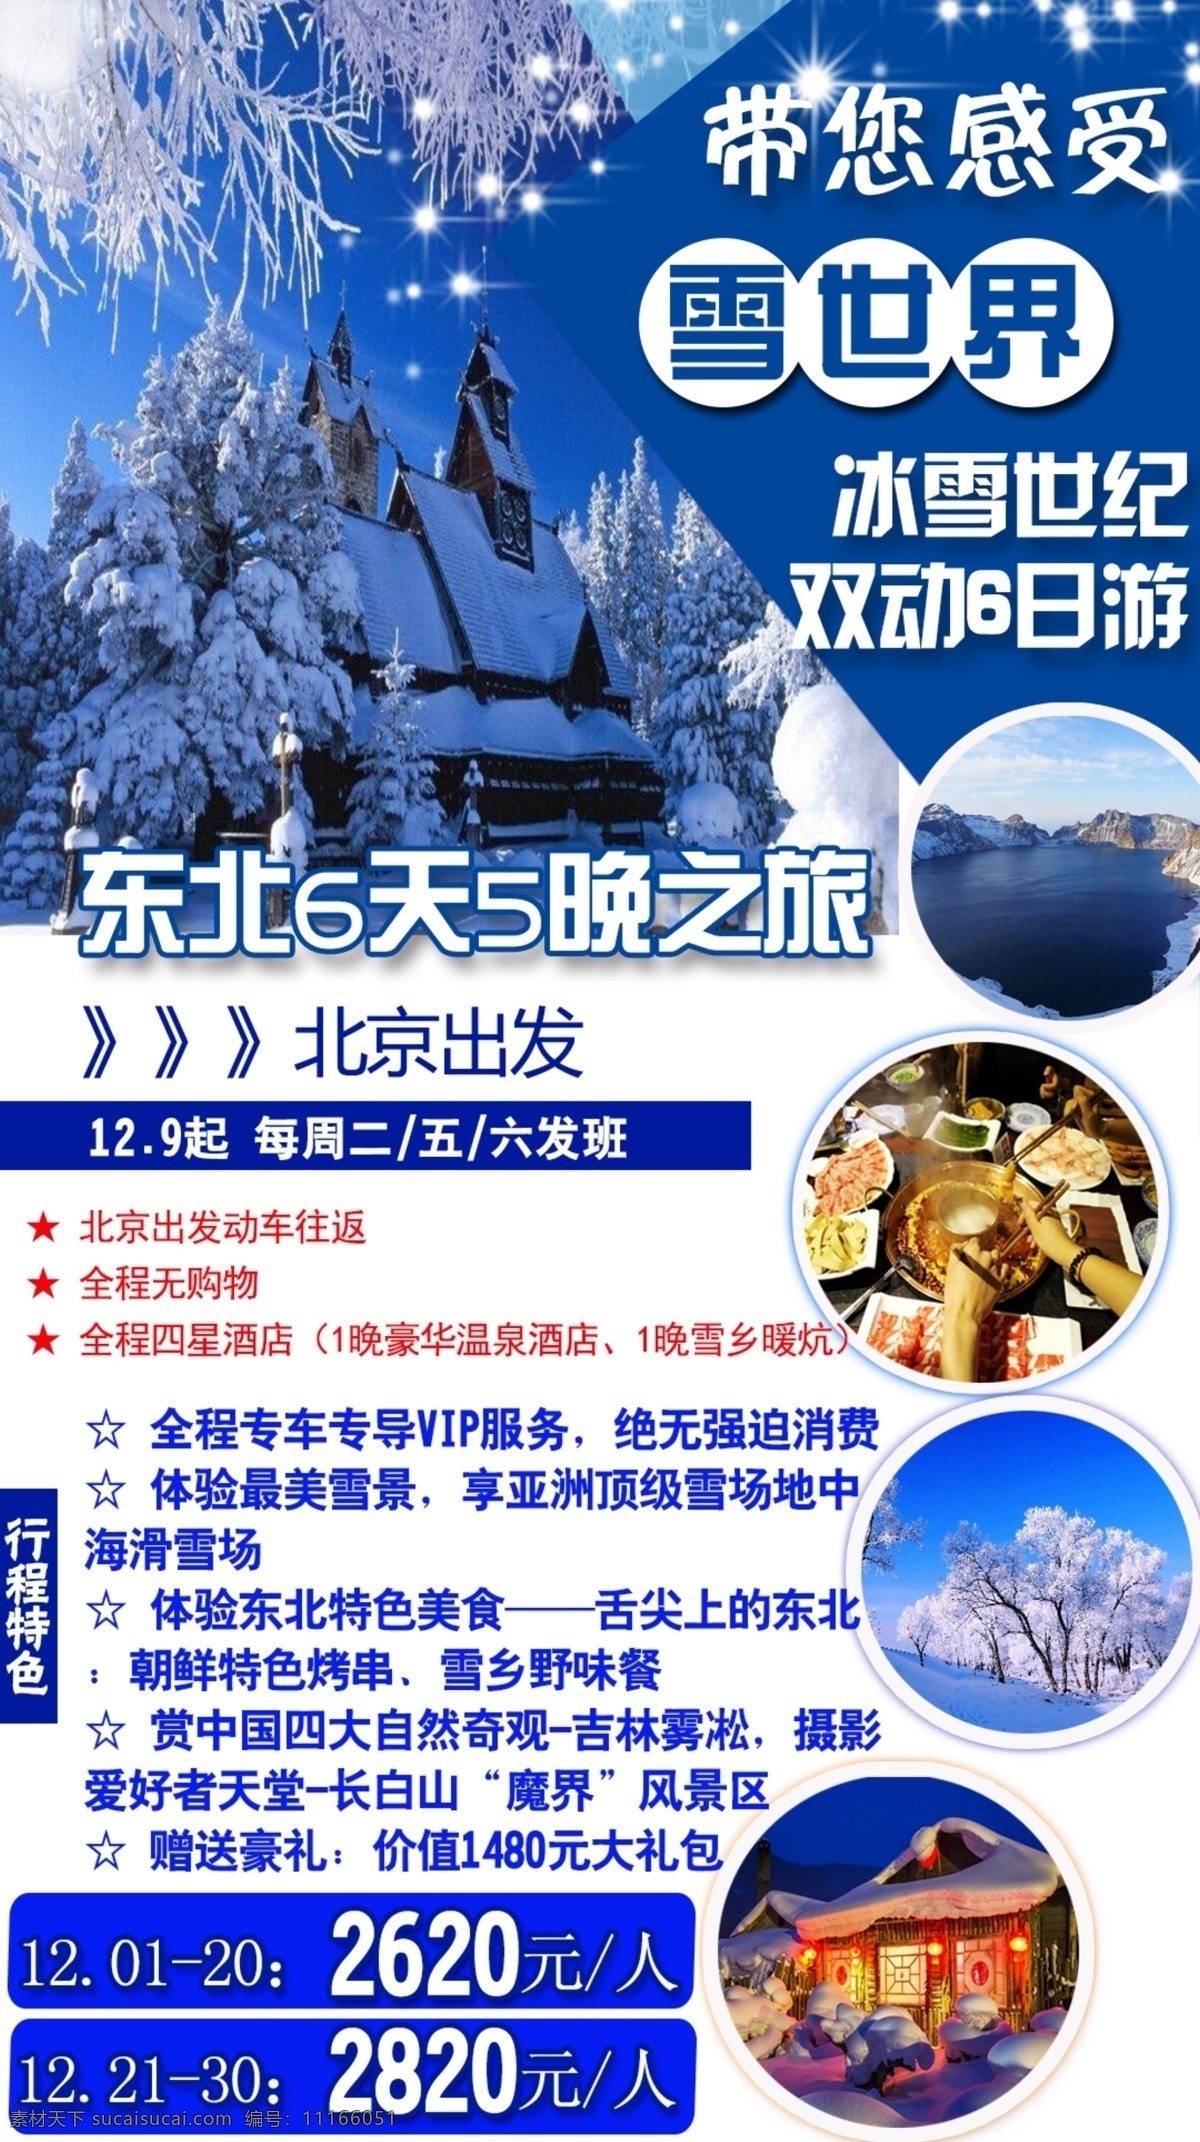 旅游宣传广告 冰雪世纪 旅游 旅游宣传 东北